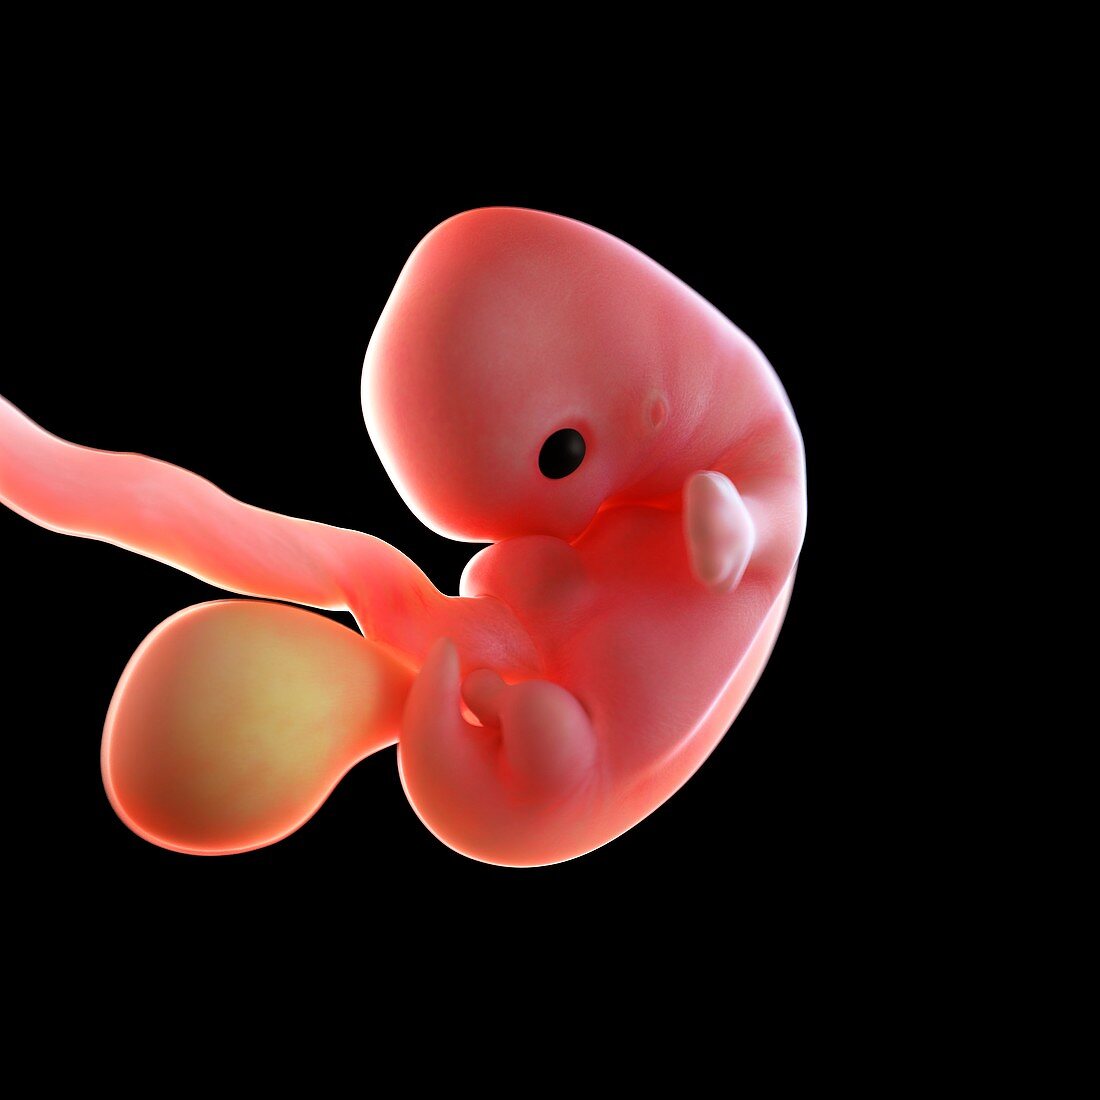 Human foetus age 7 weeks, illustration